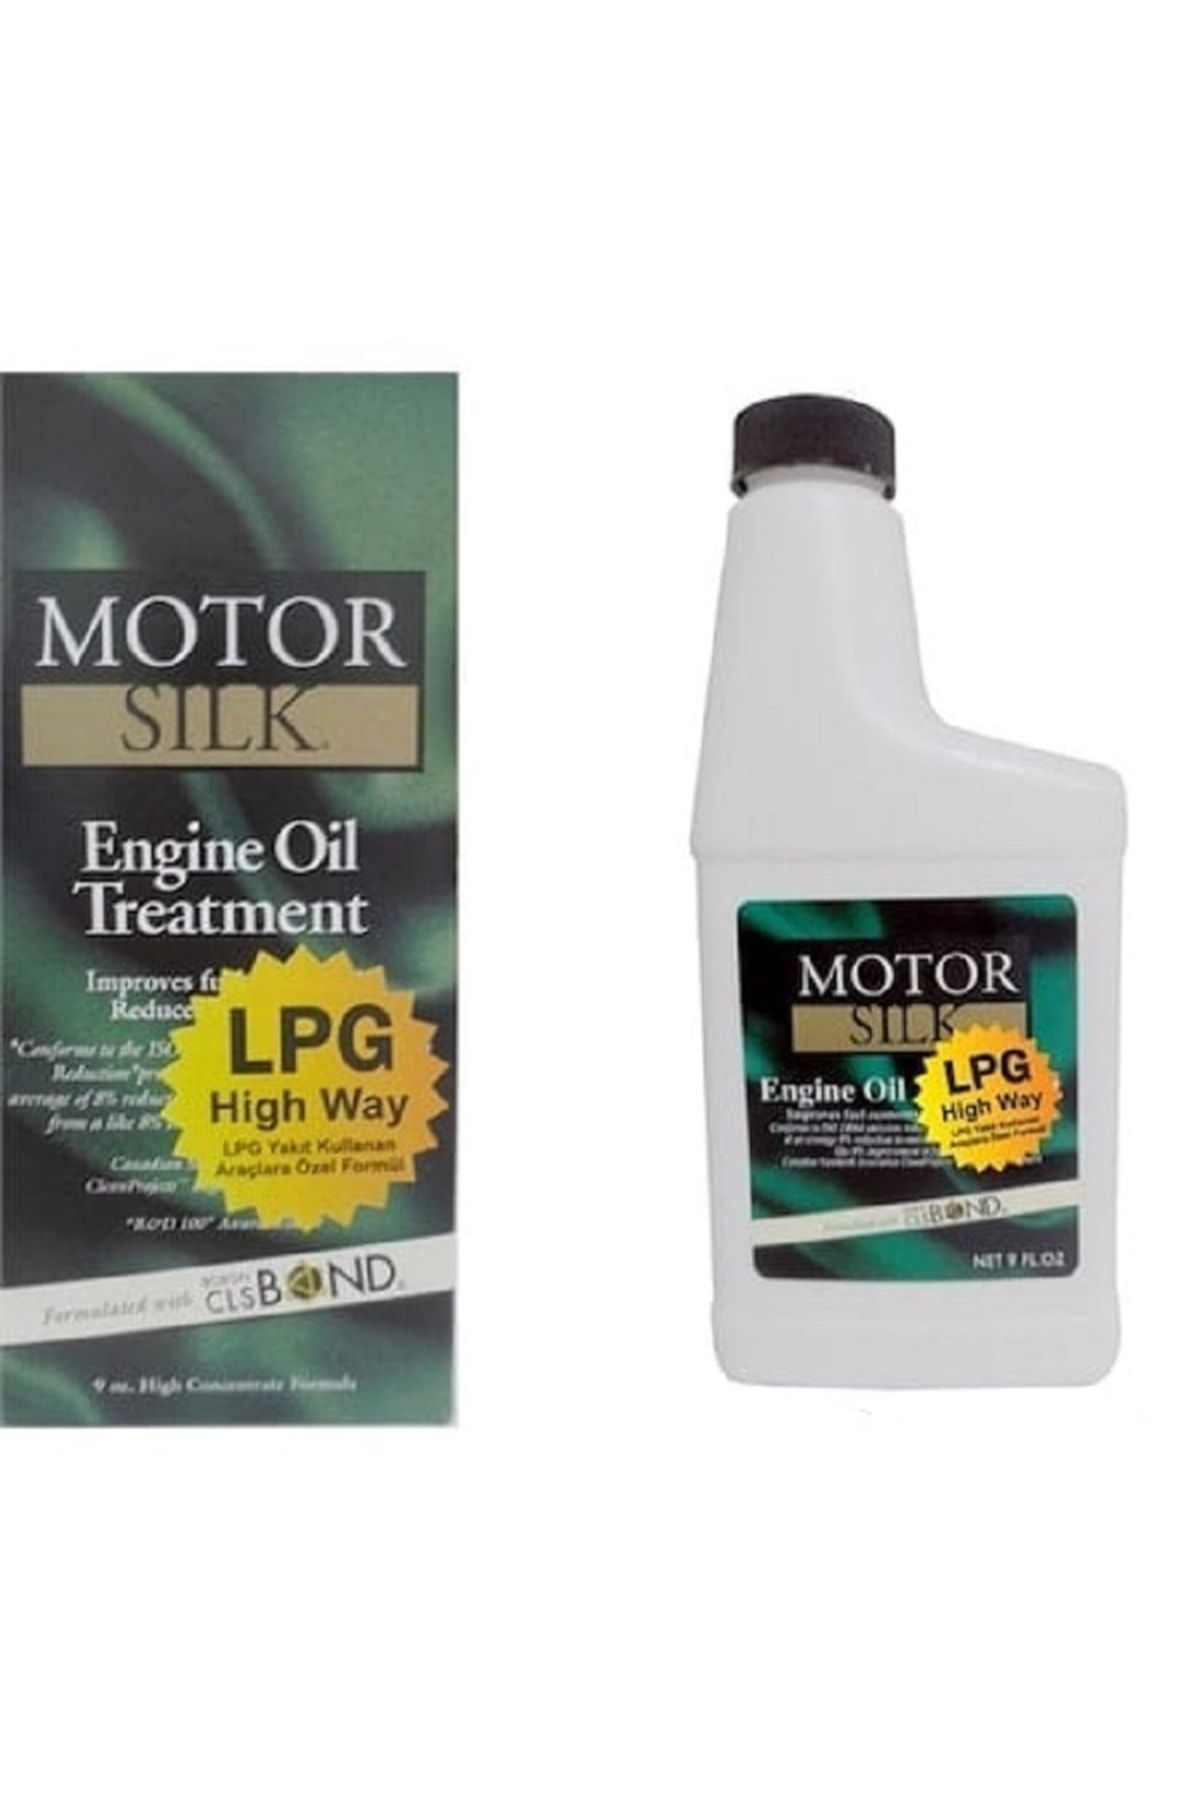 MotorSilk Motor Silk Lpg Araçlara Özel Formul 3 Adet Bor Katkısı